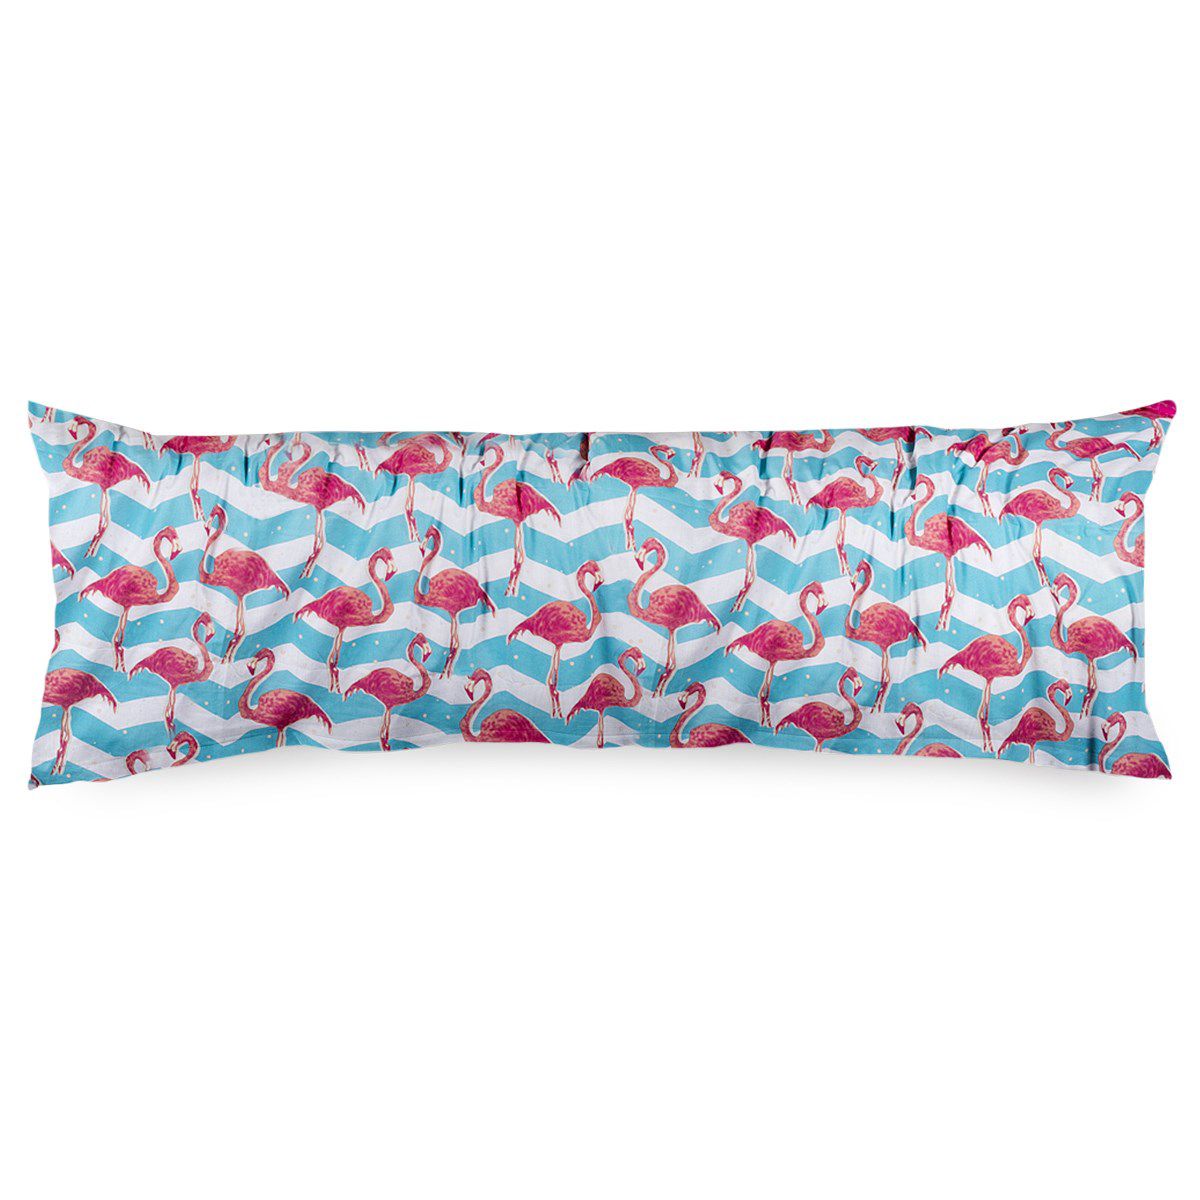 4Home Povlak na Relaxační polštář Náhradní manžel Flamingo, 50 x 150 cm - 4home.cz